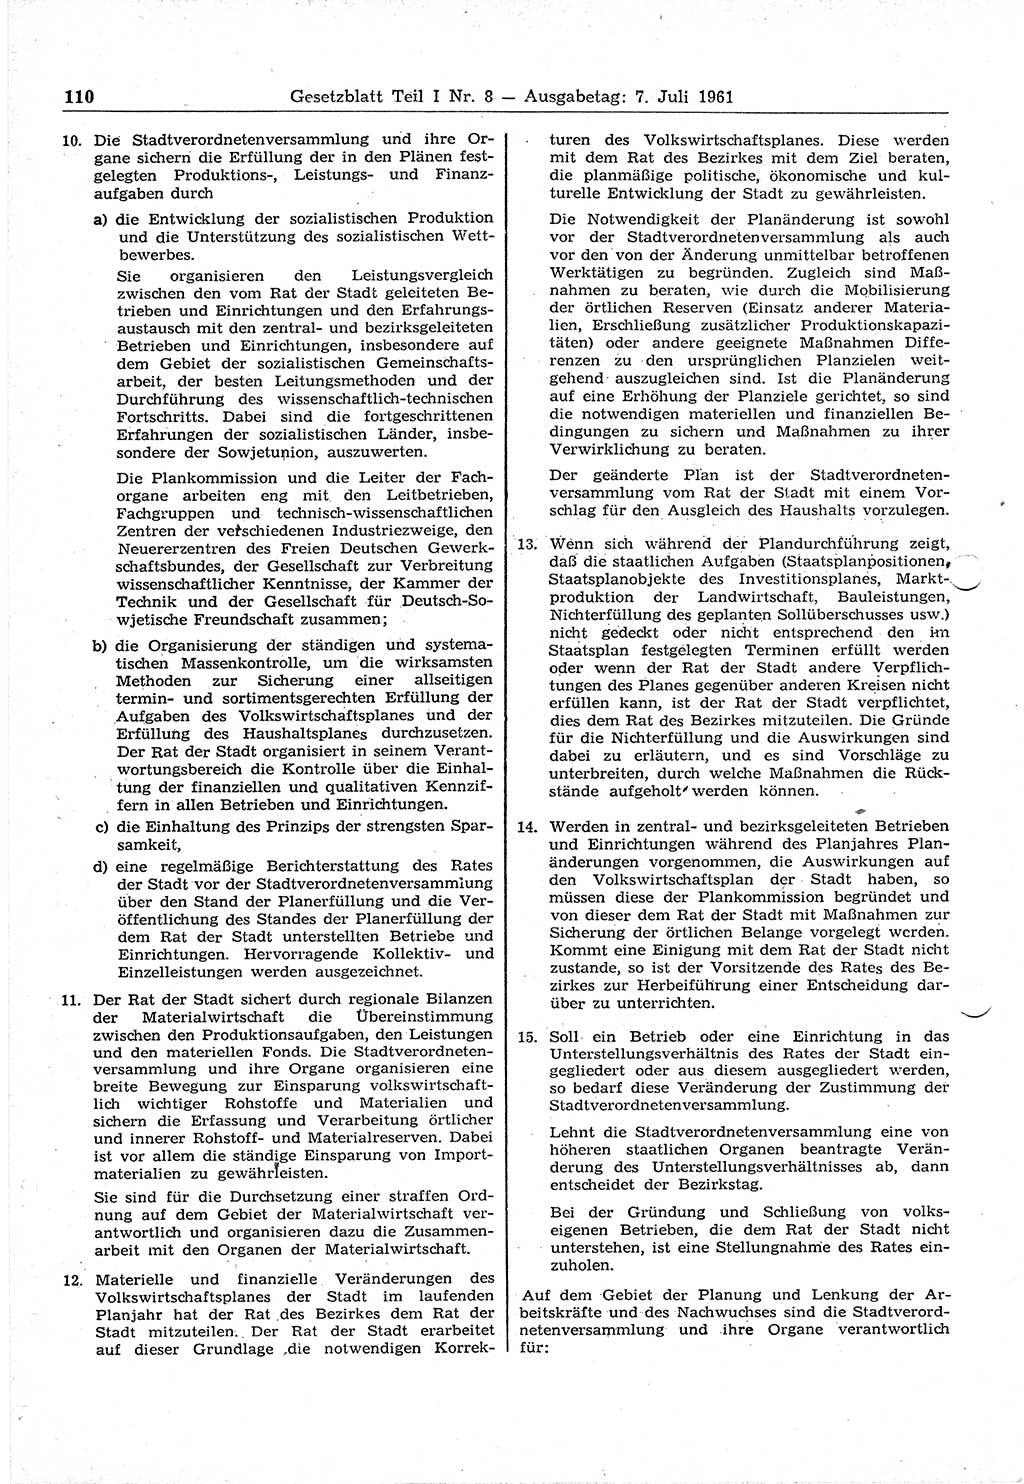 Gesetzblatt (GBl.) der Deutschen Demokratischen Republik (DDR) Teil Ⅰ 1961, Seite 110 (GBl. DDR Ⅰ 1961, S. 110)